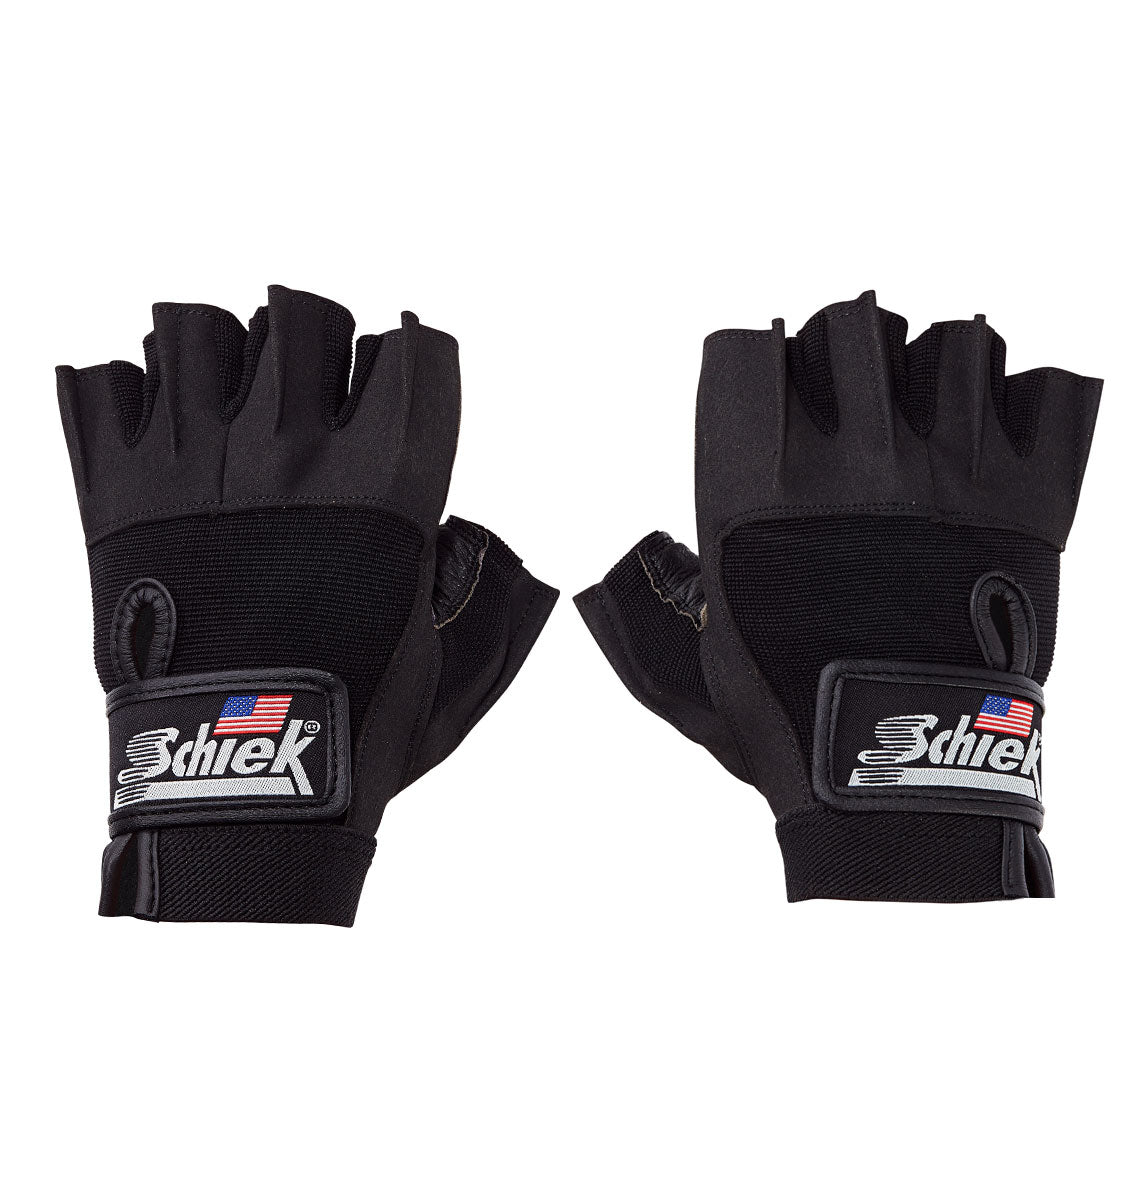 715 Schiek Premium Series Lefting Gloves Pair Top